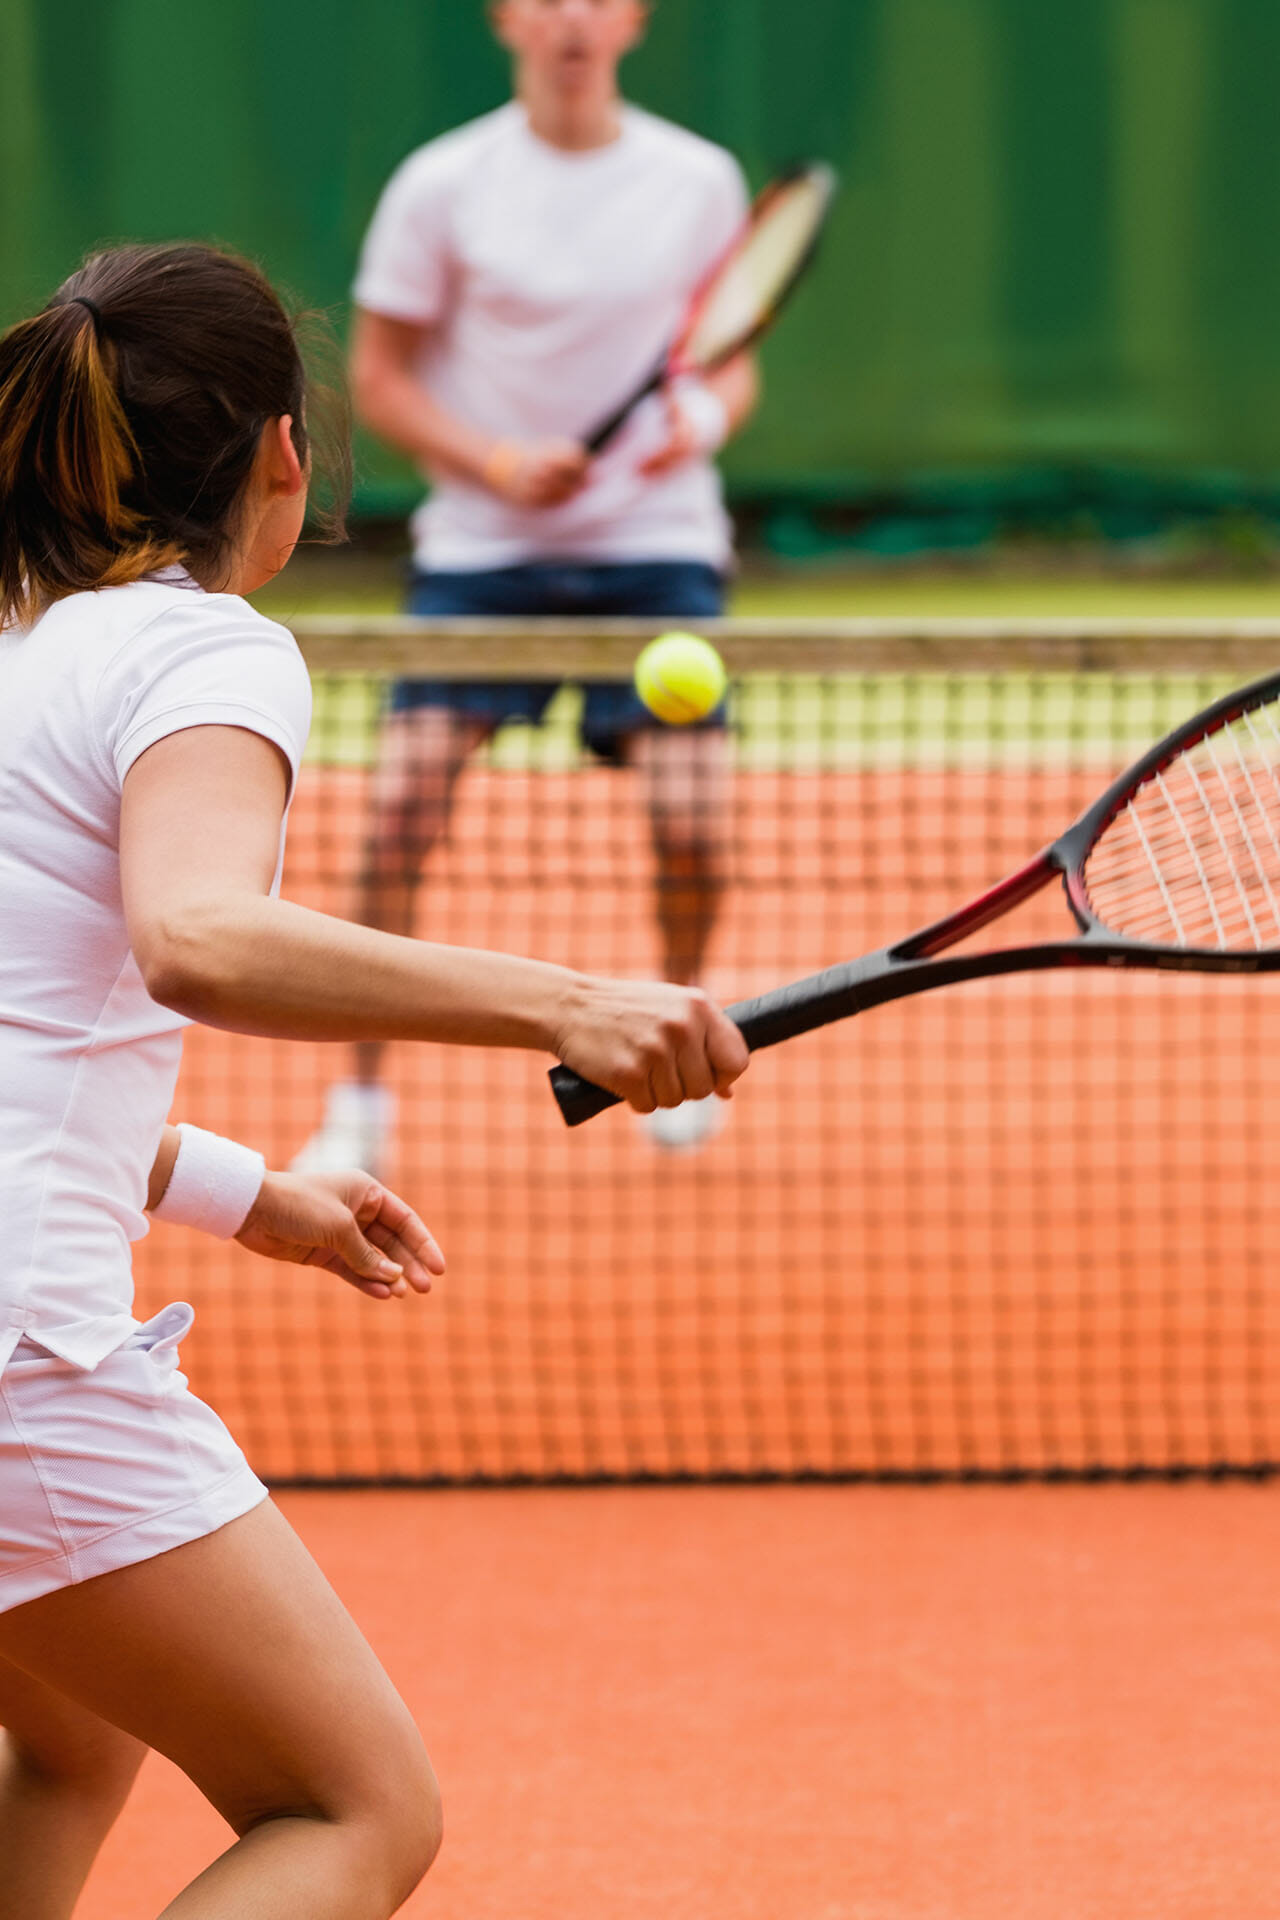 Eine Frau spielen gegen einen Mann Tennis.